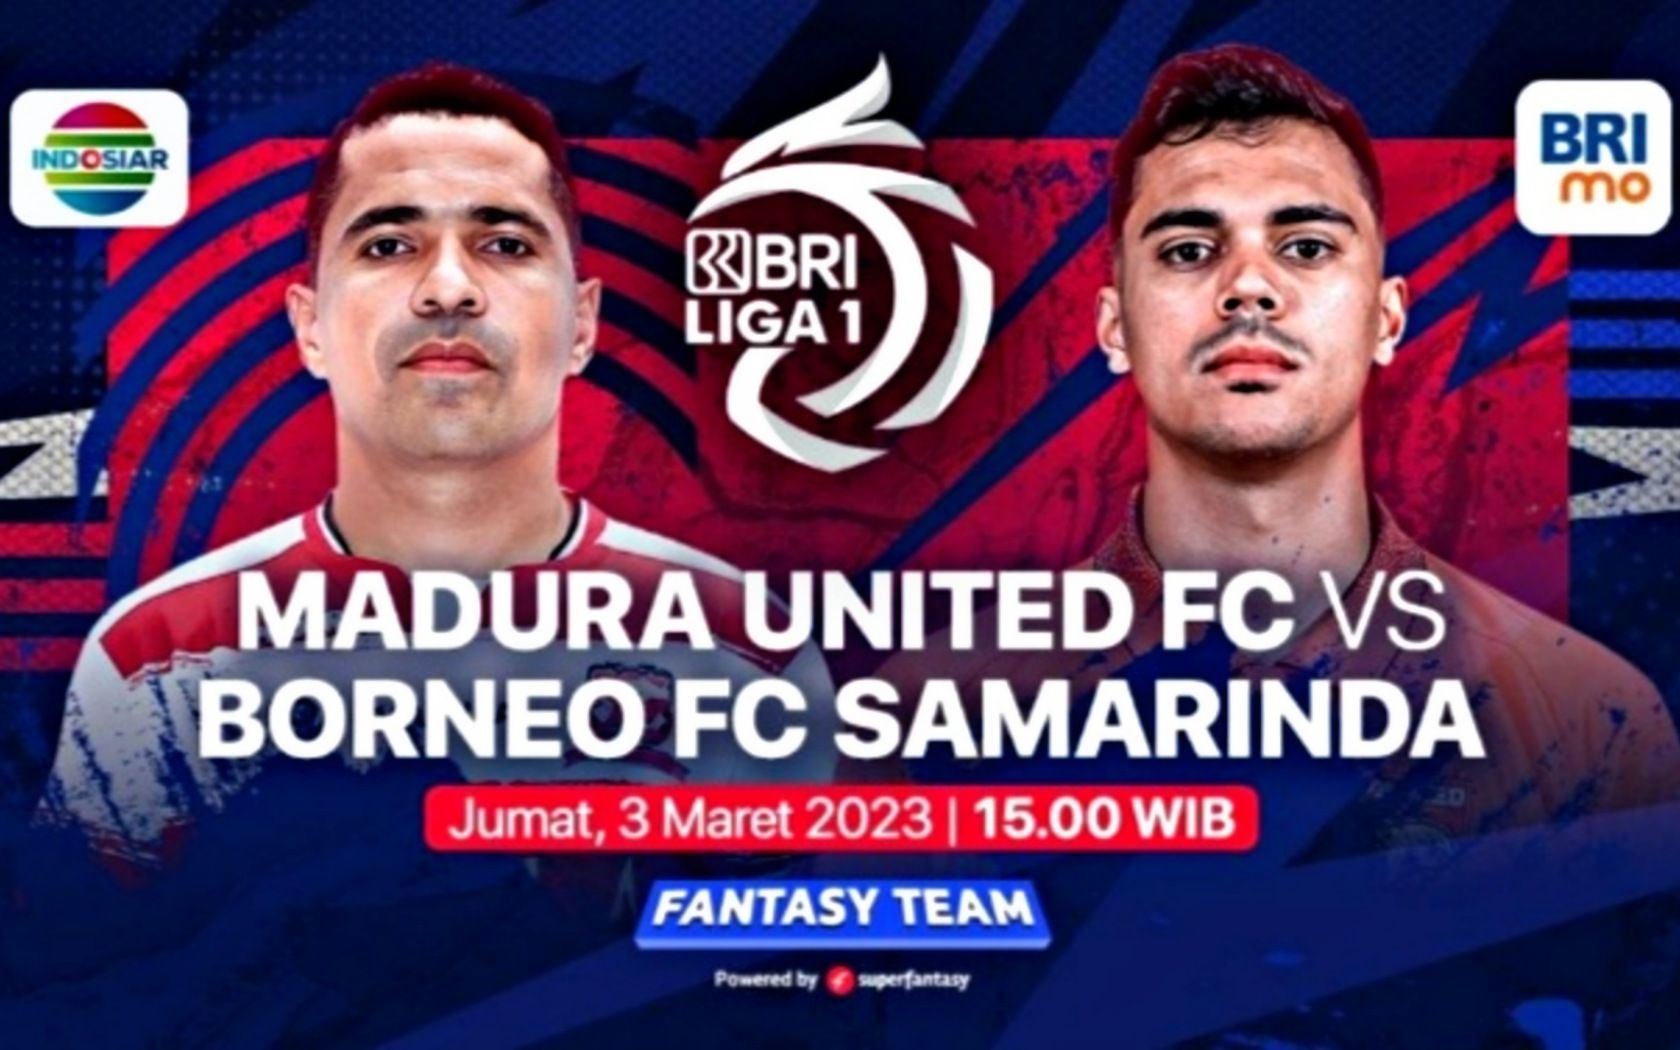 Ilustrasi prediksi formasi susunan pemain Madura United vs Borneo FC pertandingan BRI Liga 1 hari ini